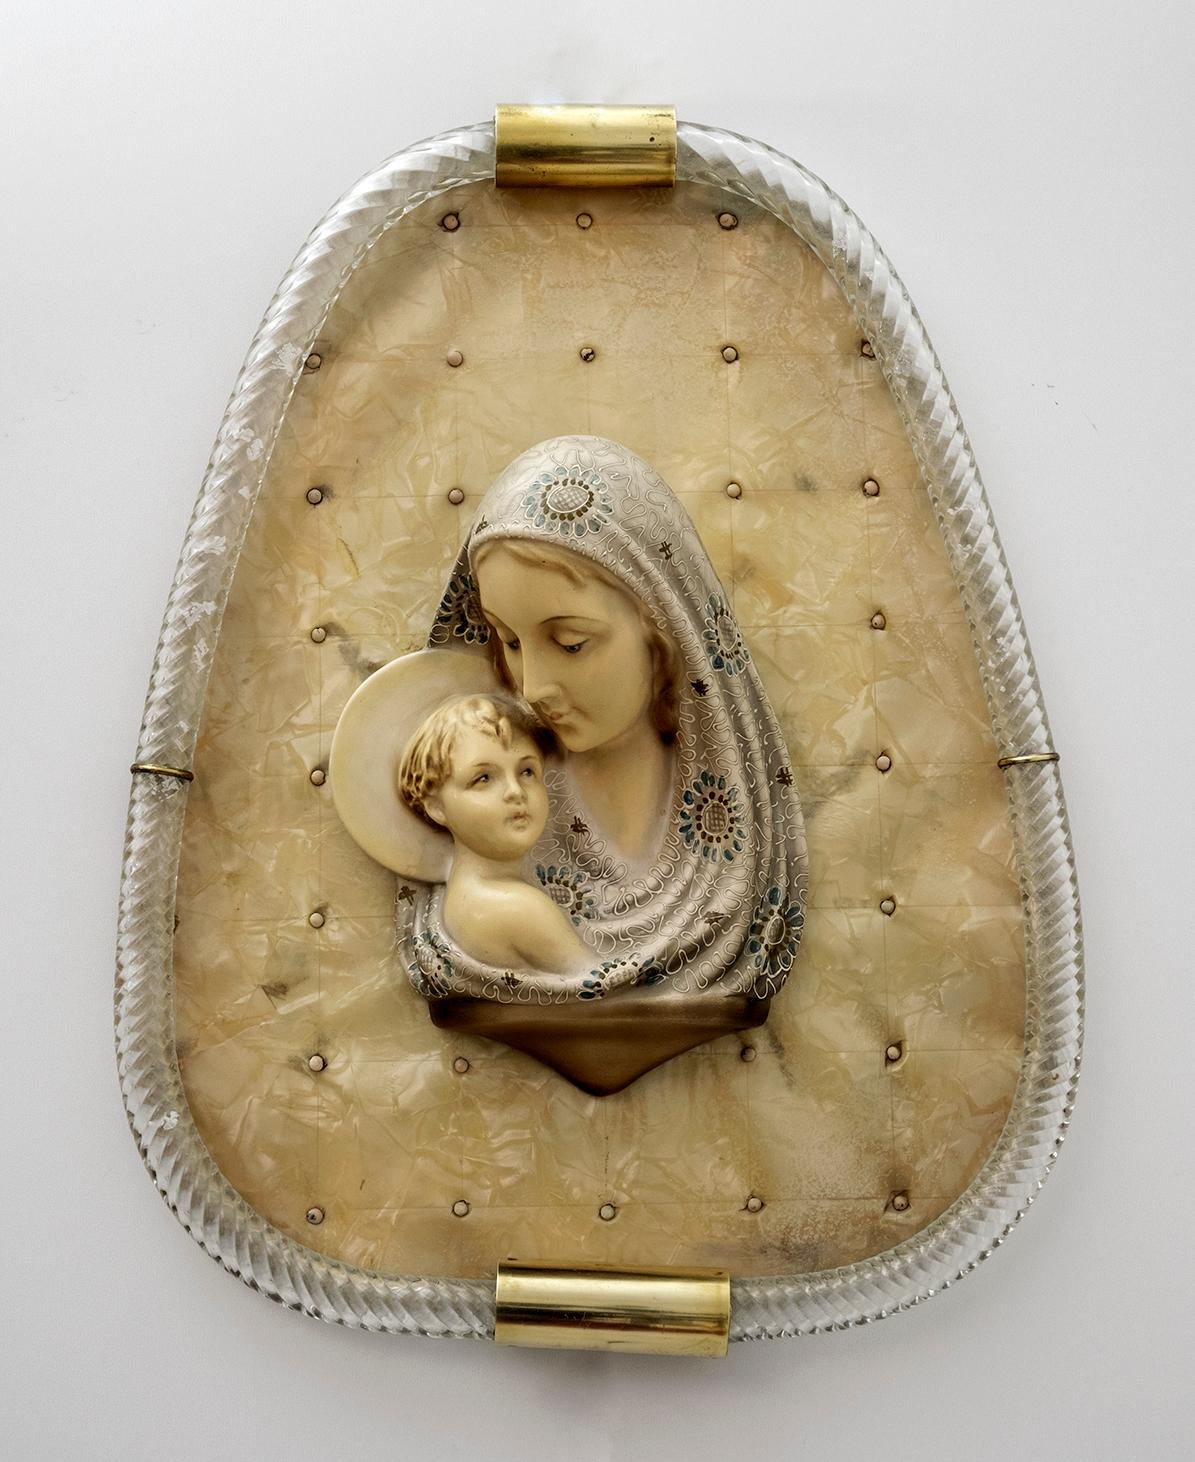 Murano Glas Fackel Rahmen Venini Produktion, innen Madonna mit Kind in Gips auf einem Xylonit Basis, aus den frühen 1950er Jahren.
Patentiertes Modell.